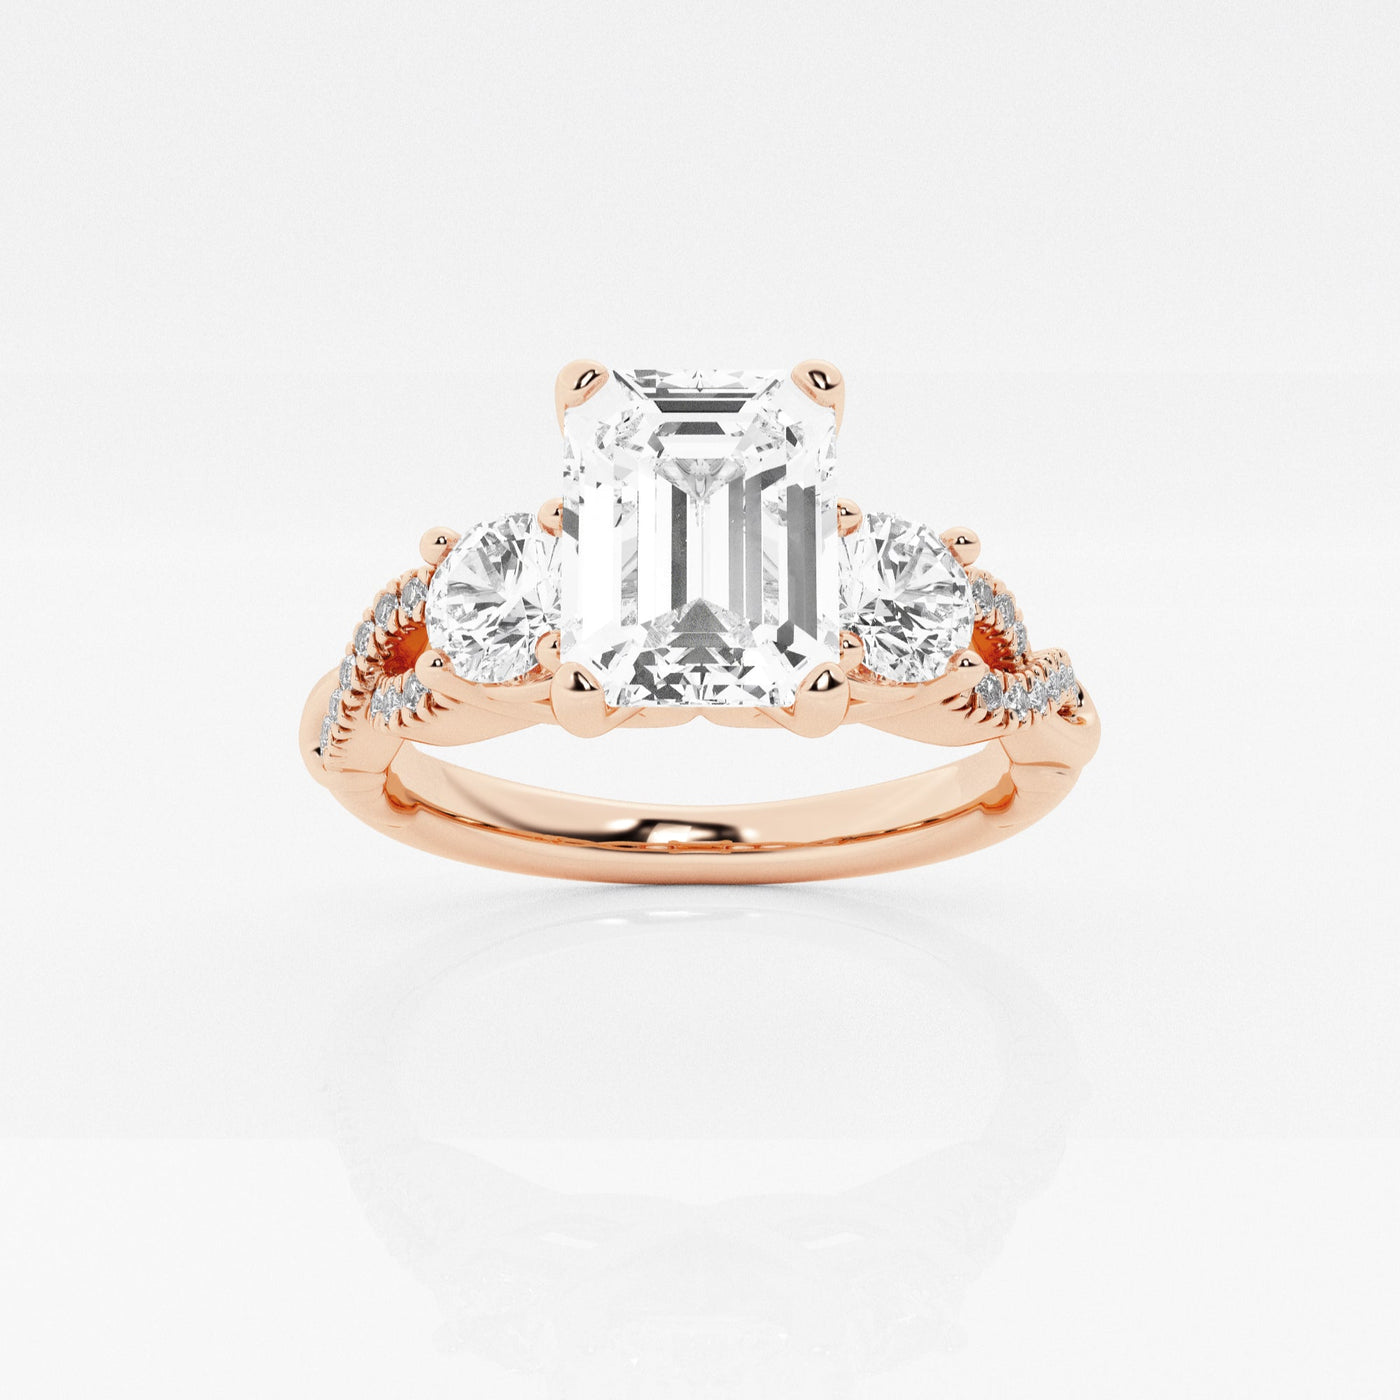 _main_image@SKU:LGR1007X2E150SOGS4~#carat_1.98#diamond-quality_fg,-vs2+#metal_18k-rose-gold